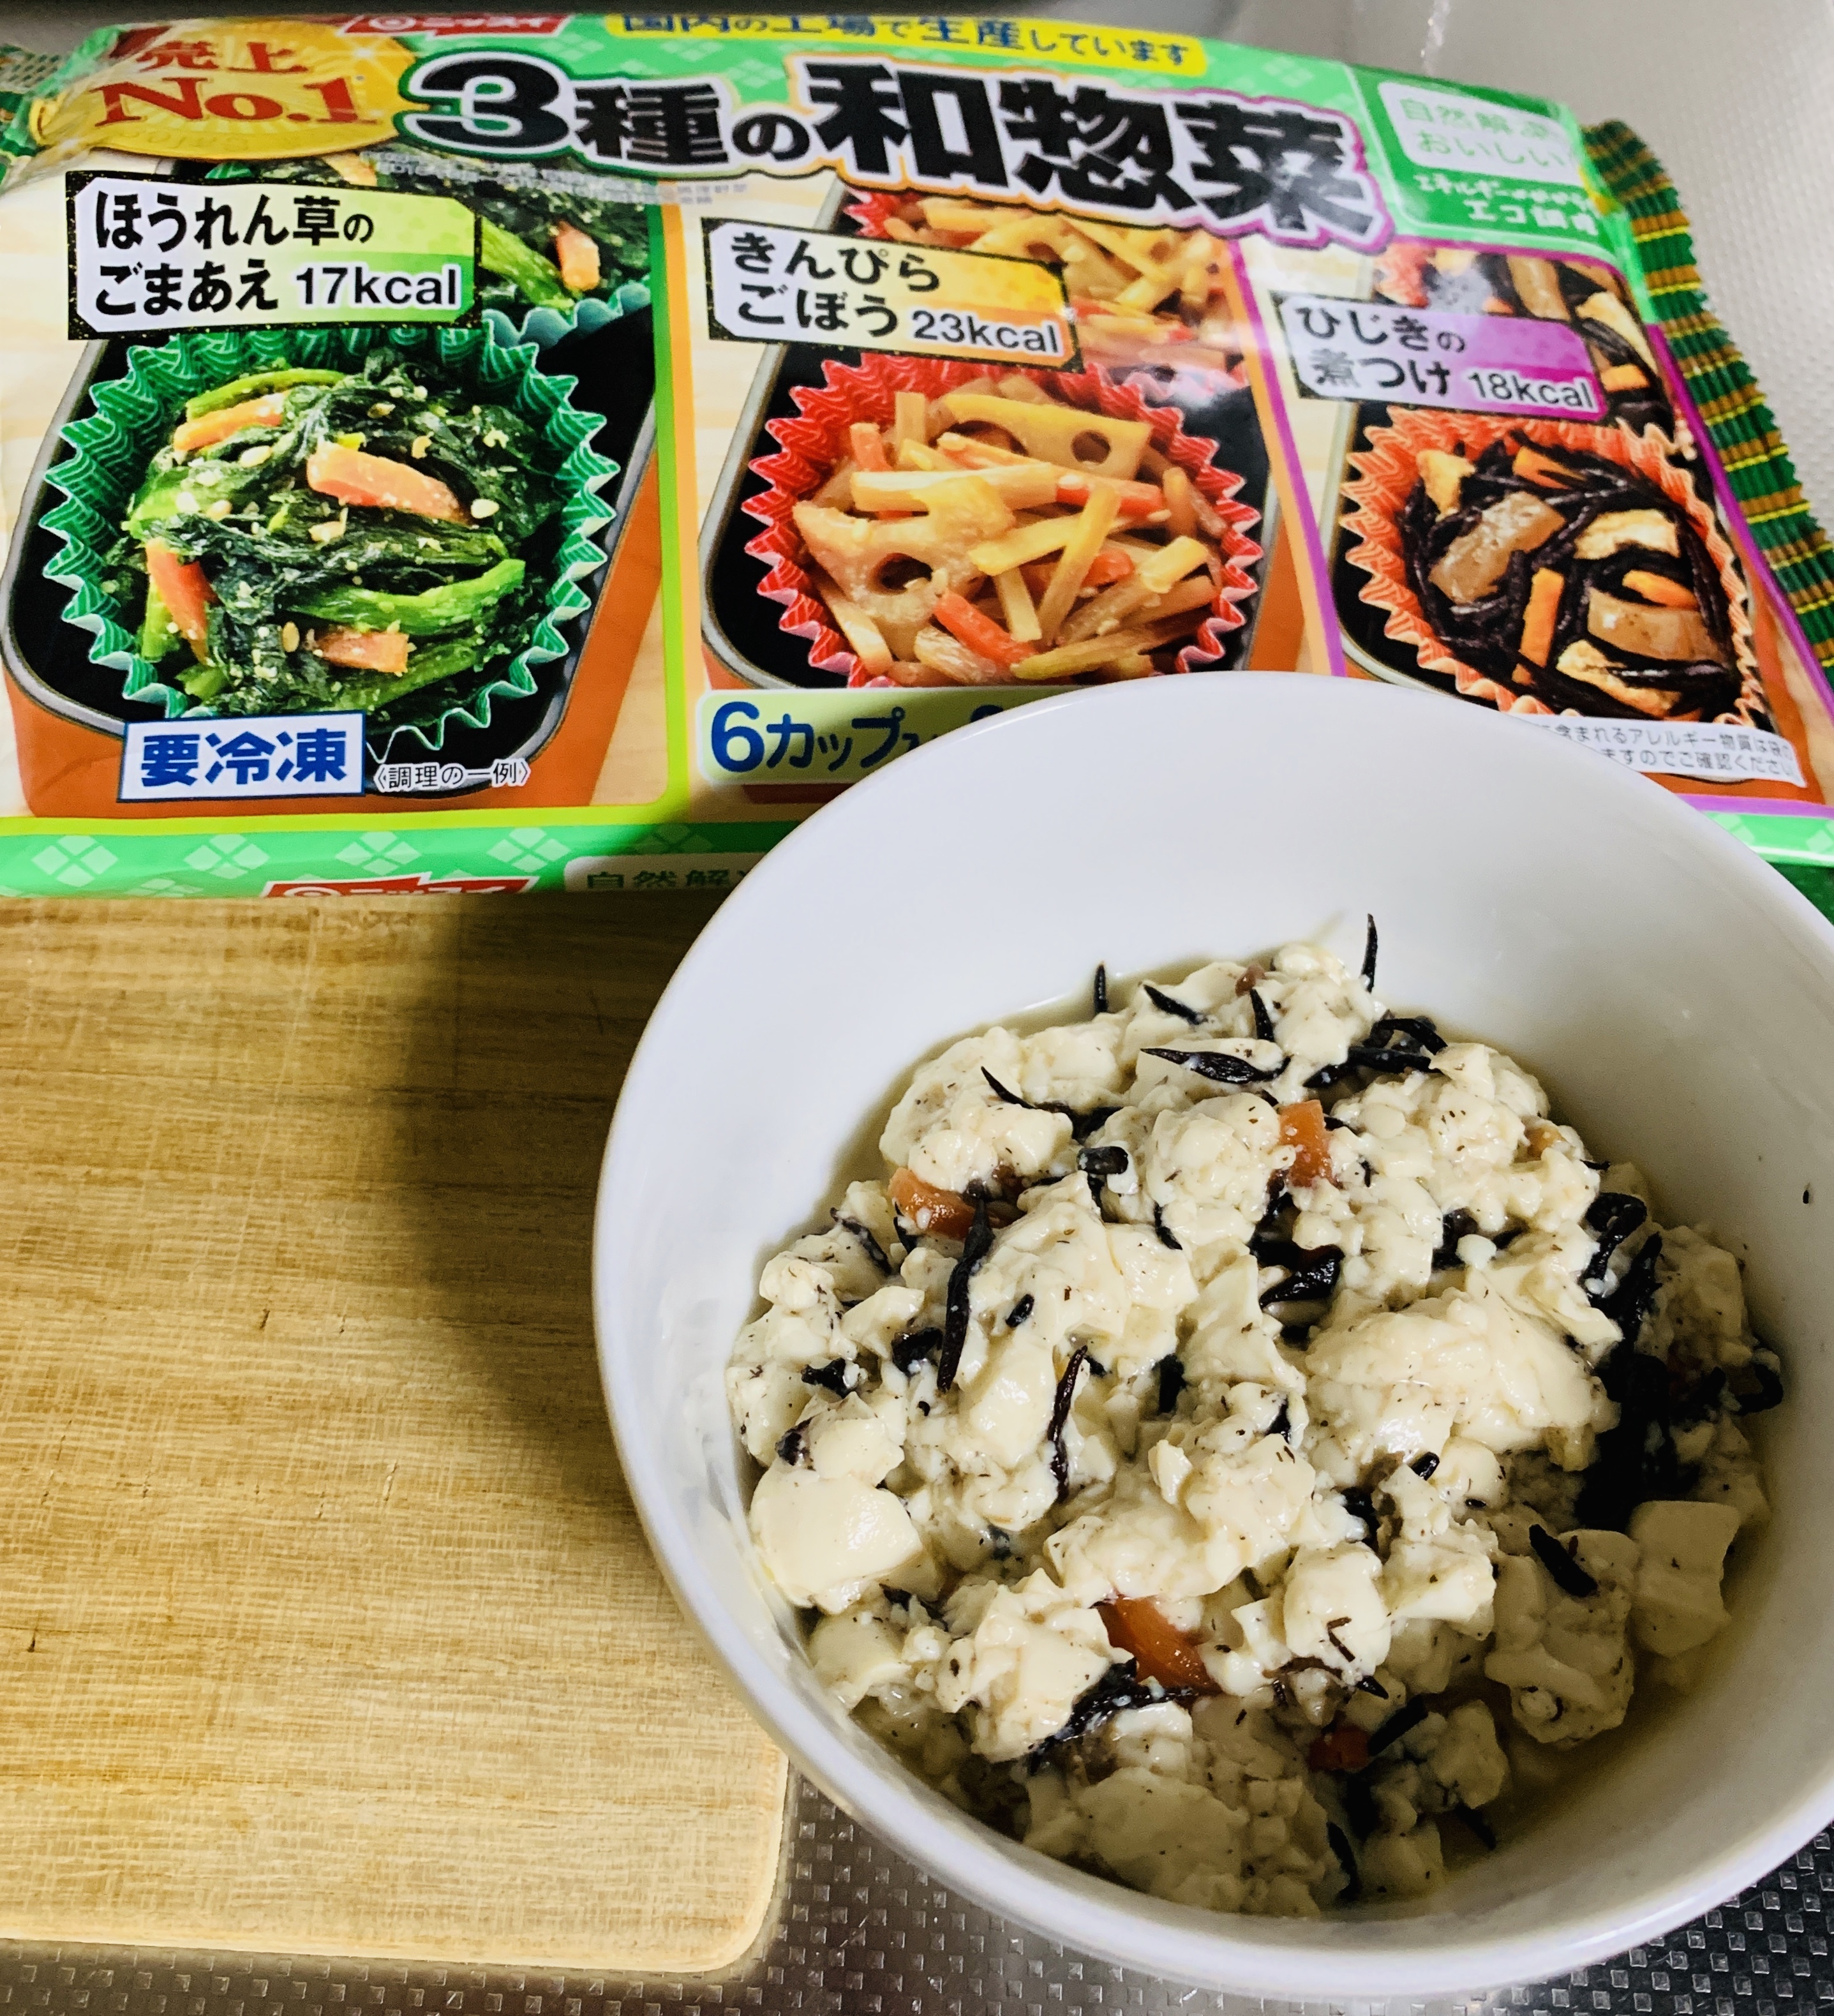 レシピ 日本水産のひじきと豆腐の白和え 冷凍食品の冷食 Com 後一品欲しい っ時に簡単に早く作れます